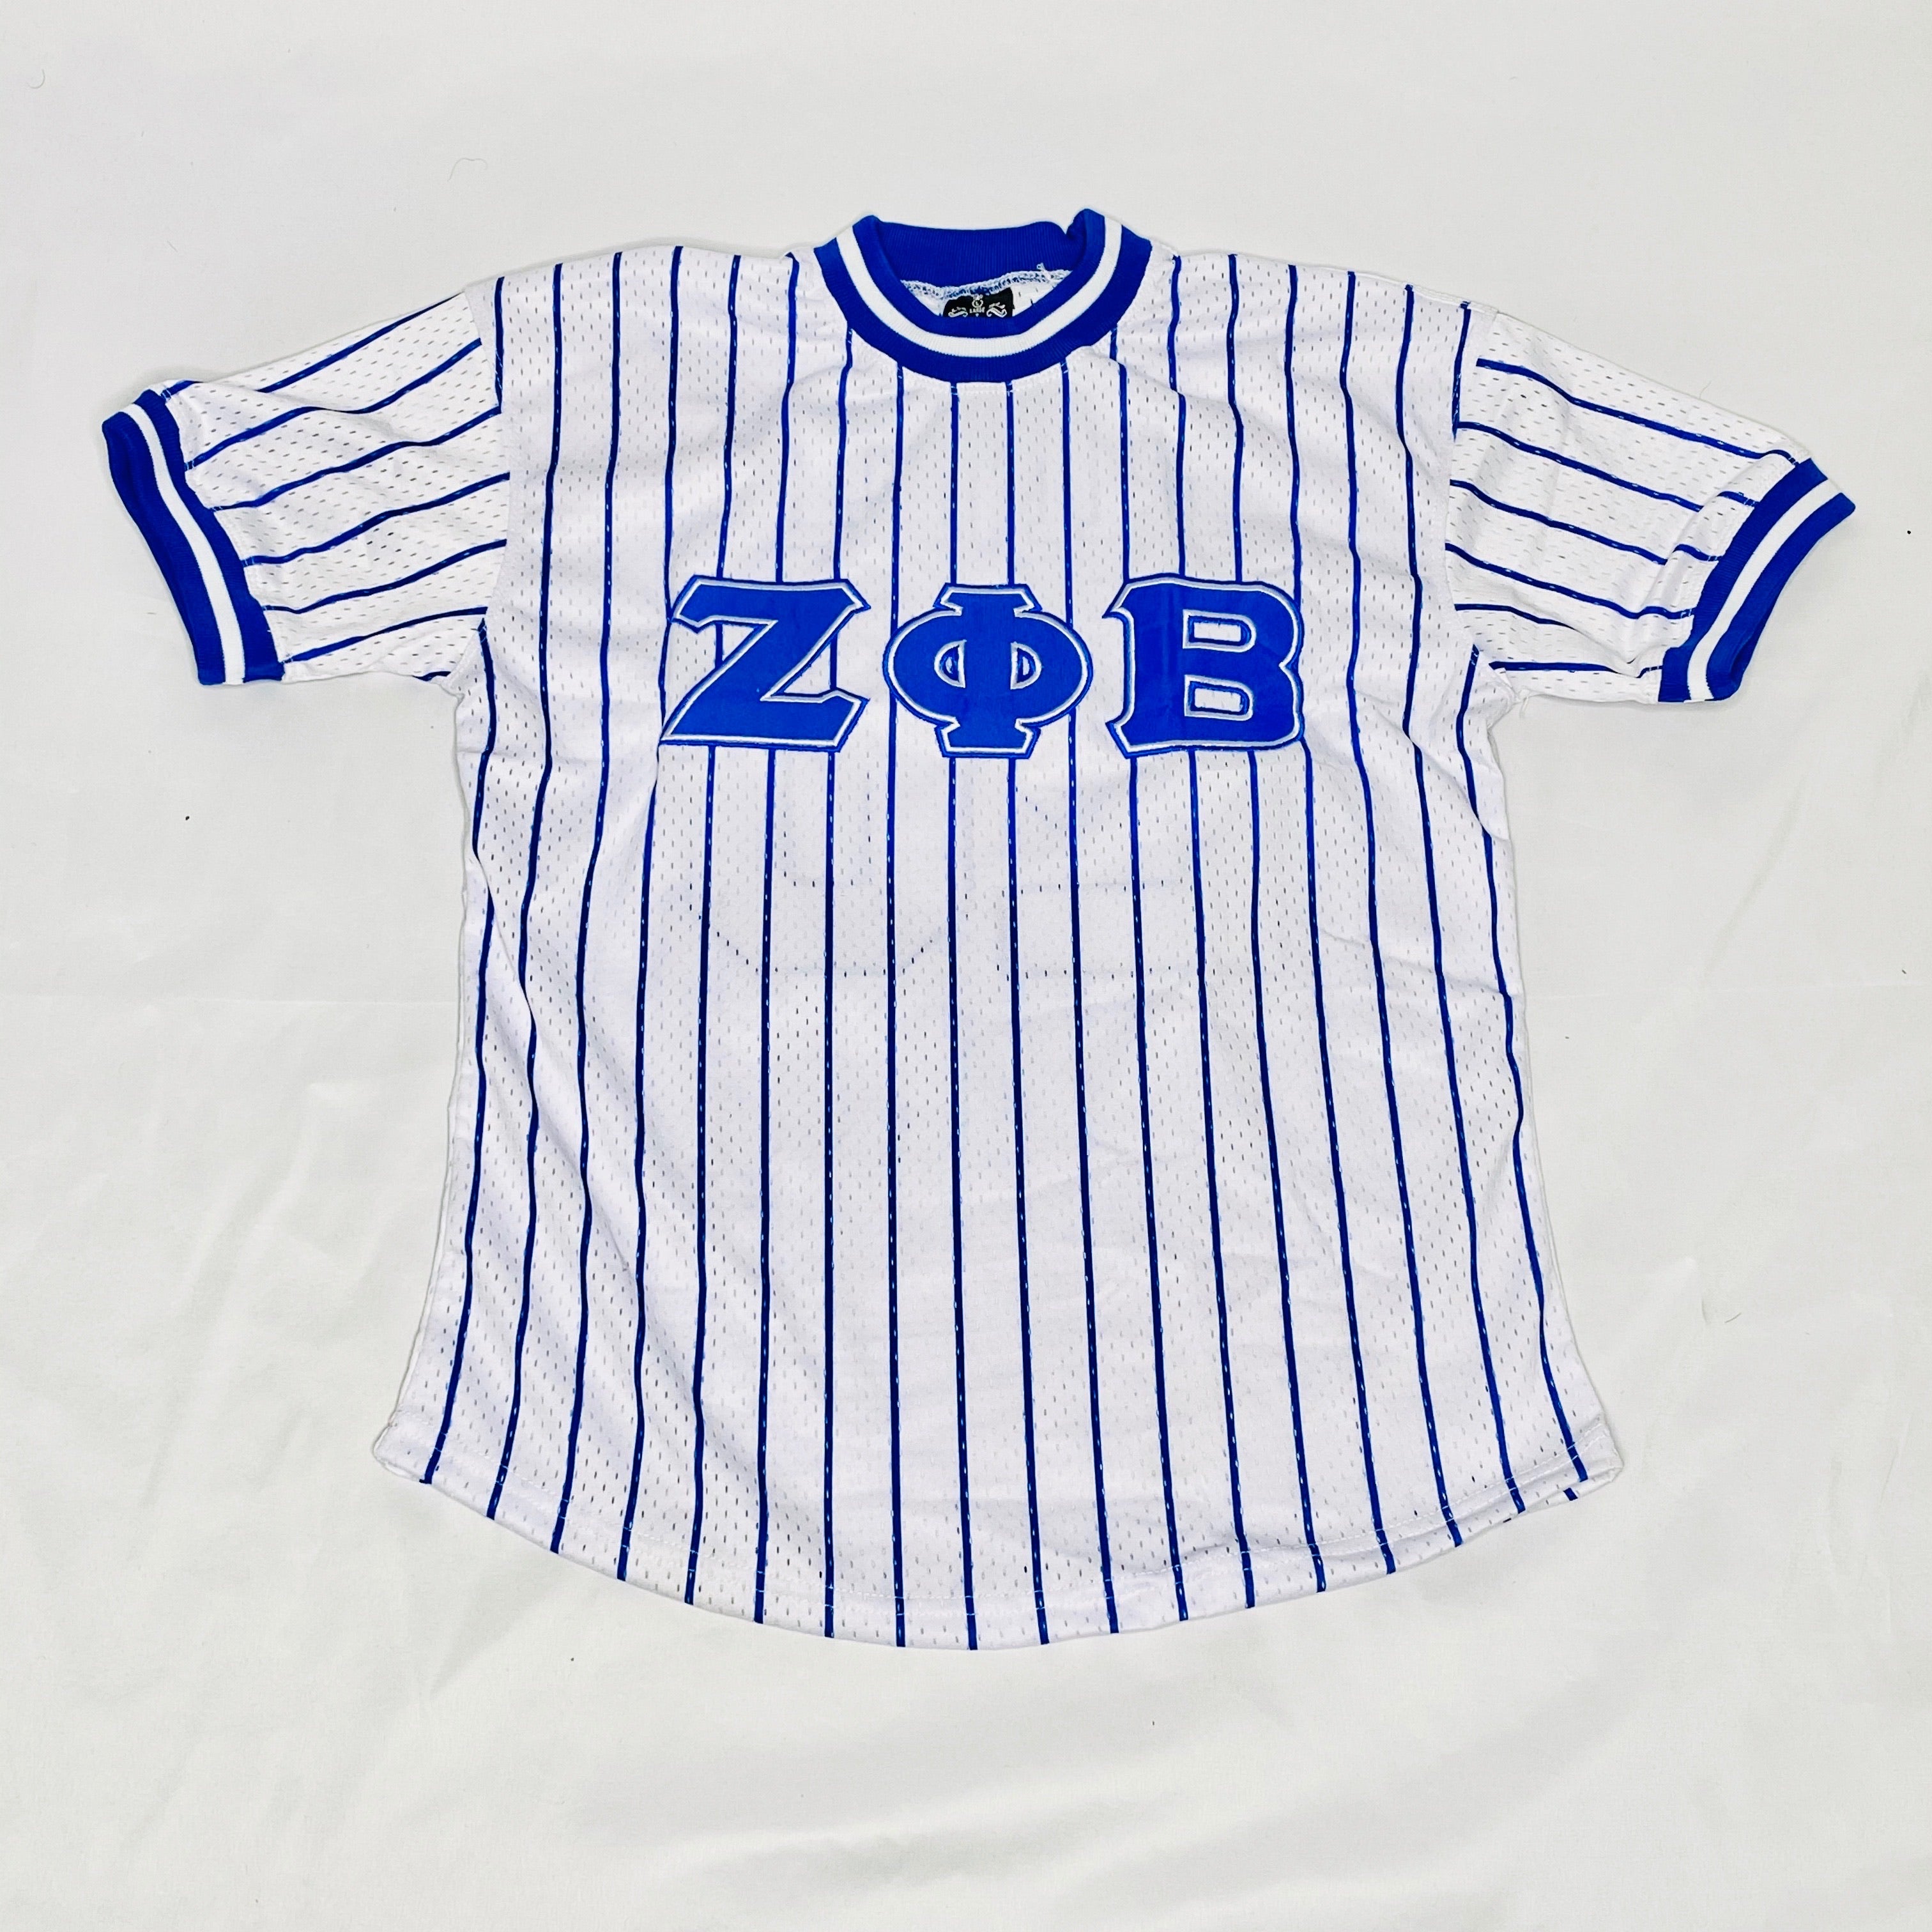 blue pinstripe baseball jersey